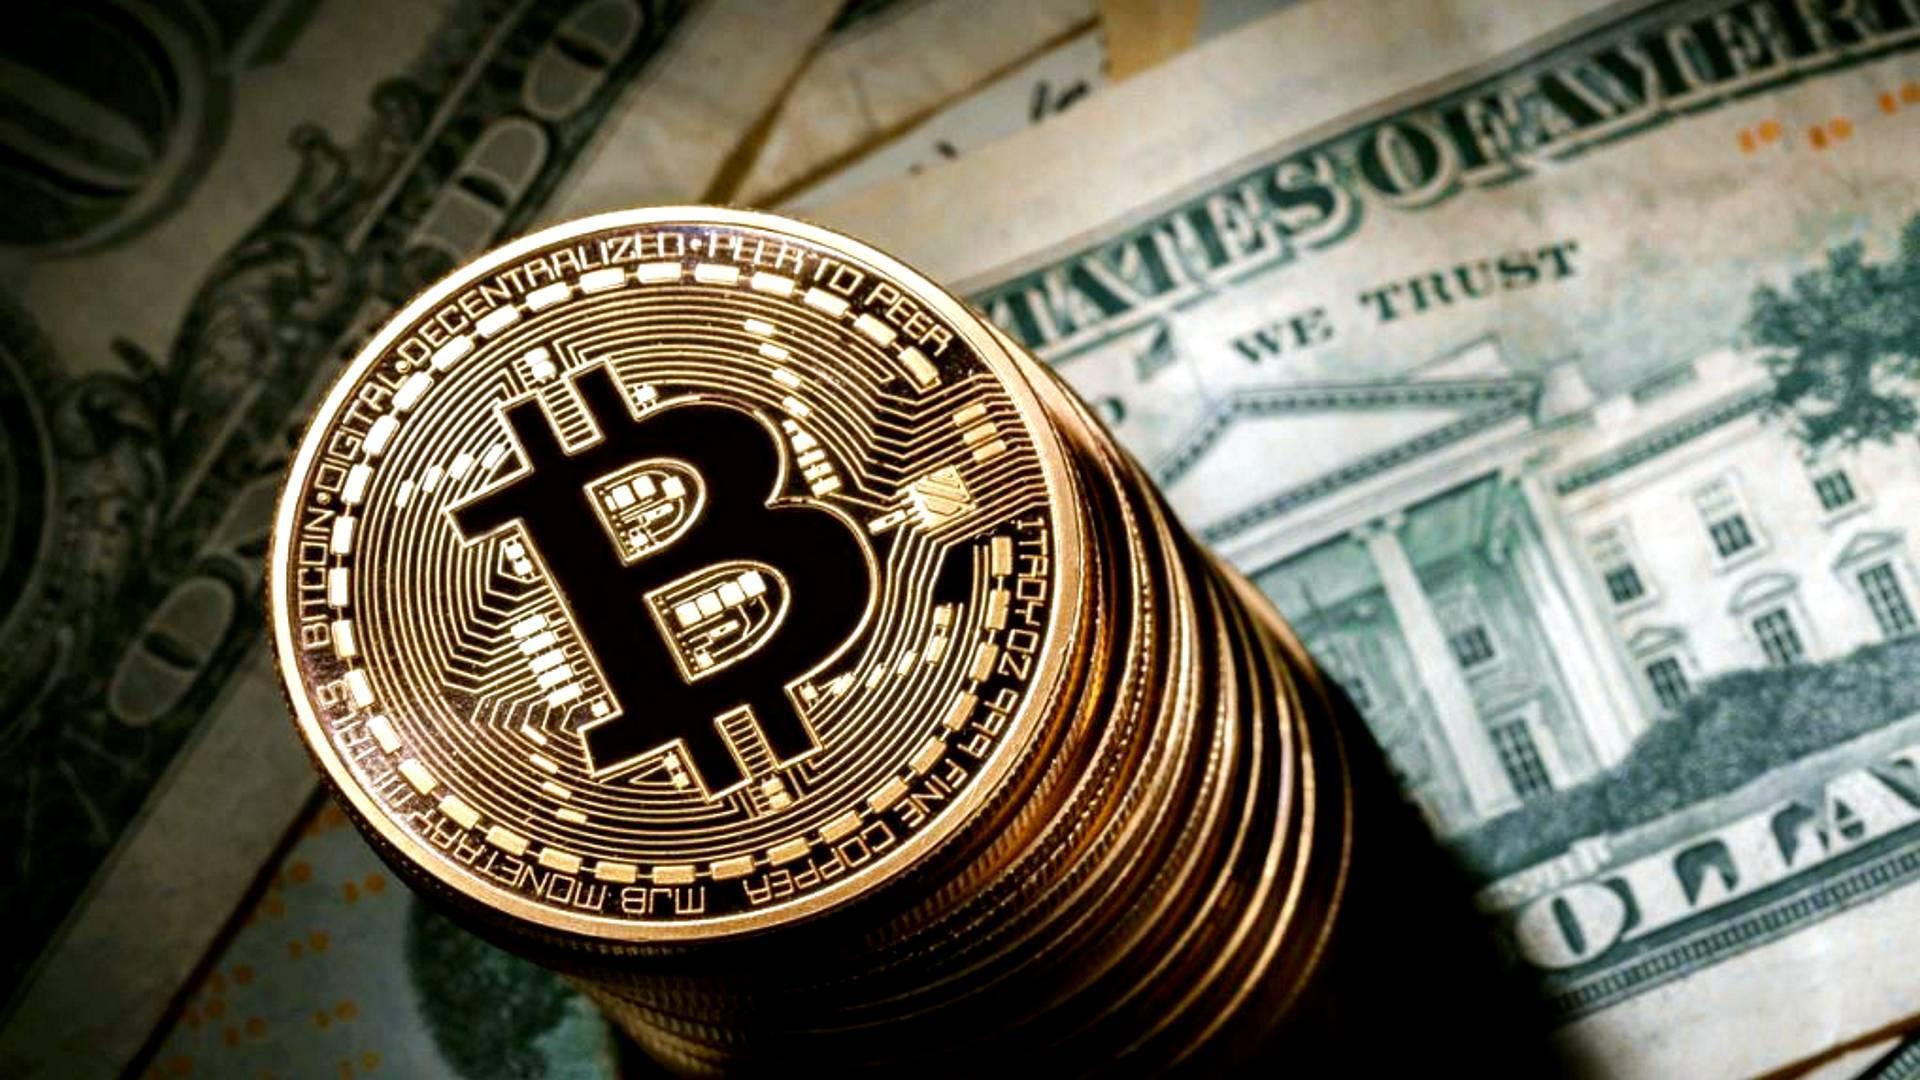 Is buying bitcoin dangerous